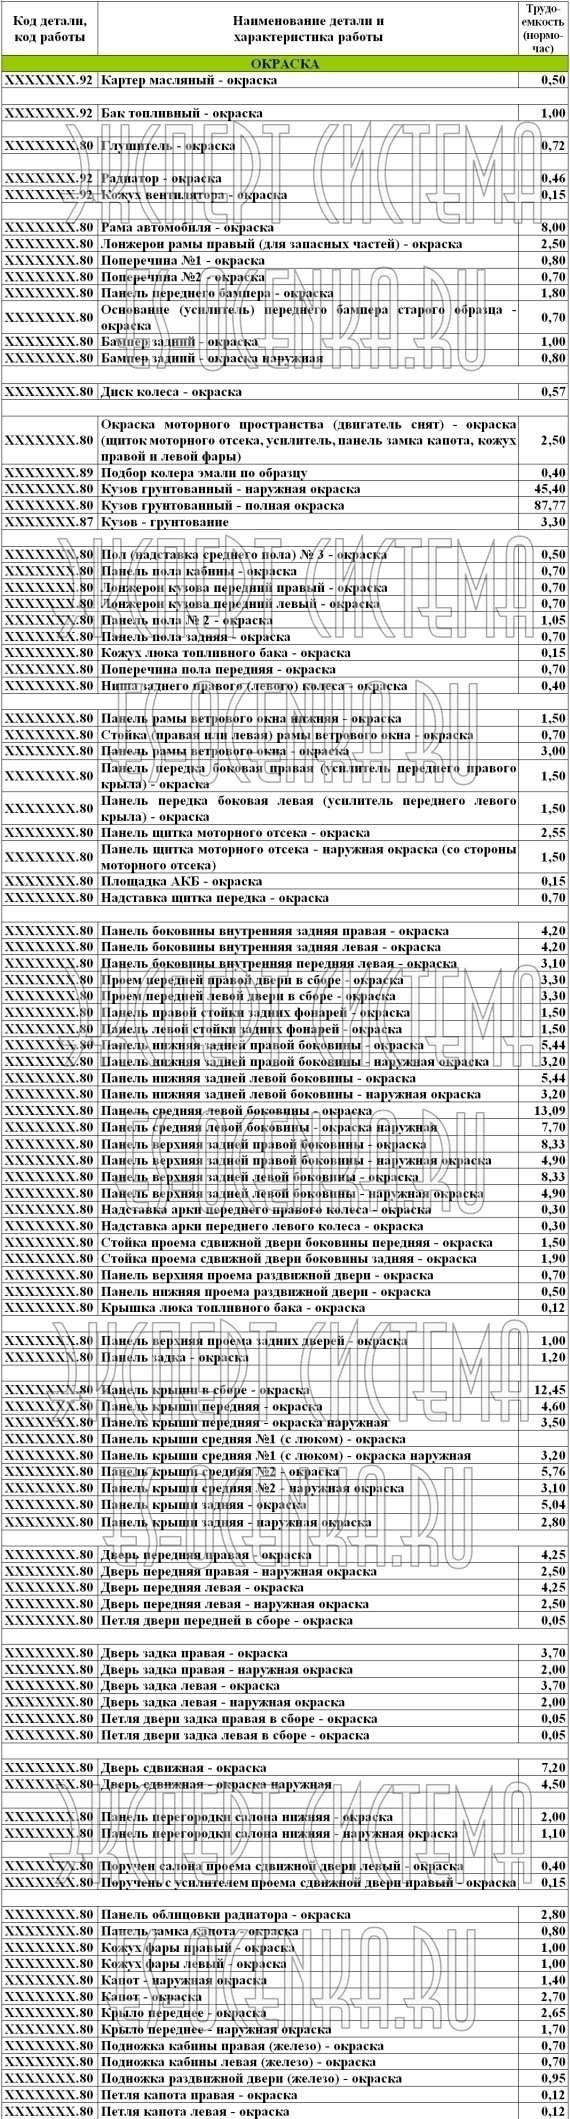 Трудоемкость (нормо-часы) ремонтных работ ГАЗ-3221 - ОКРАСКА